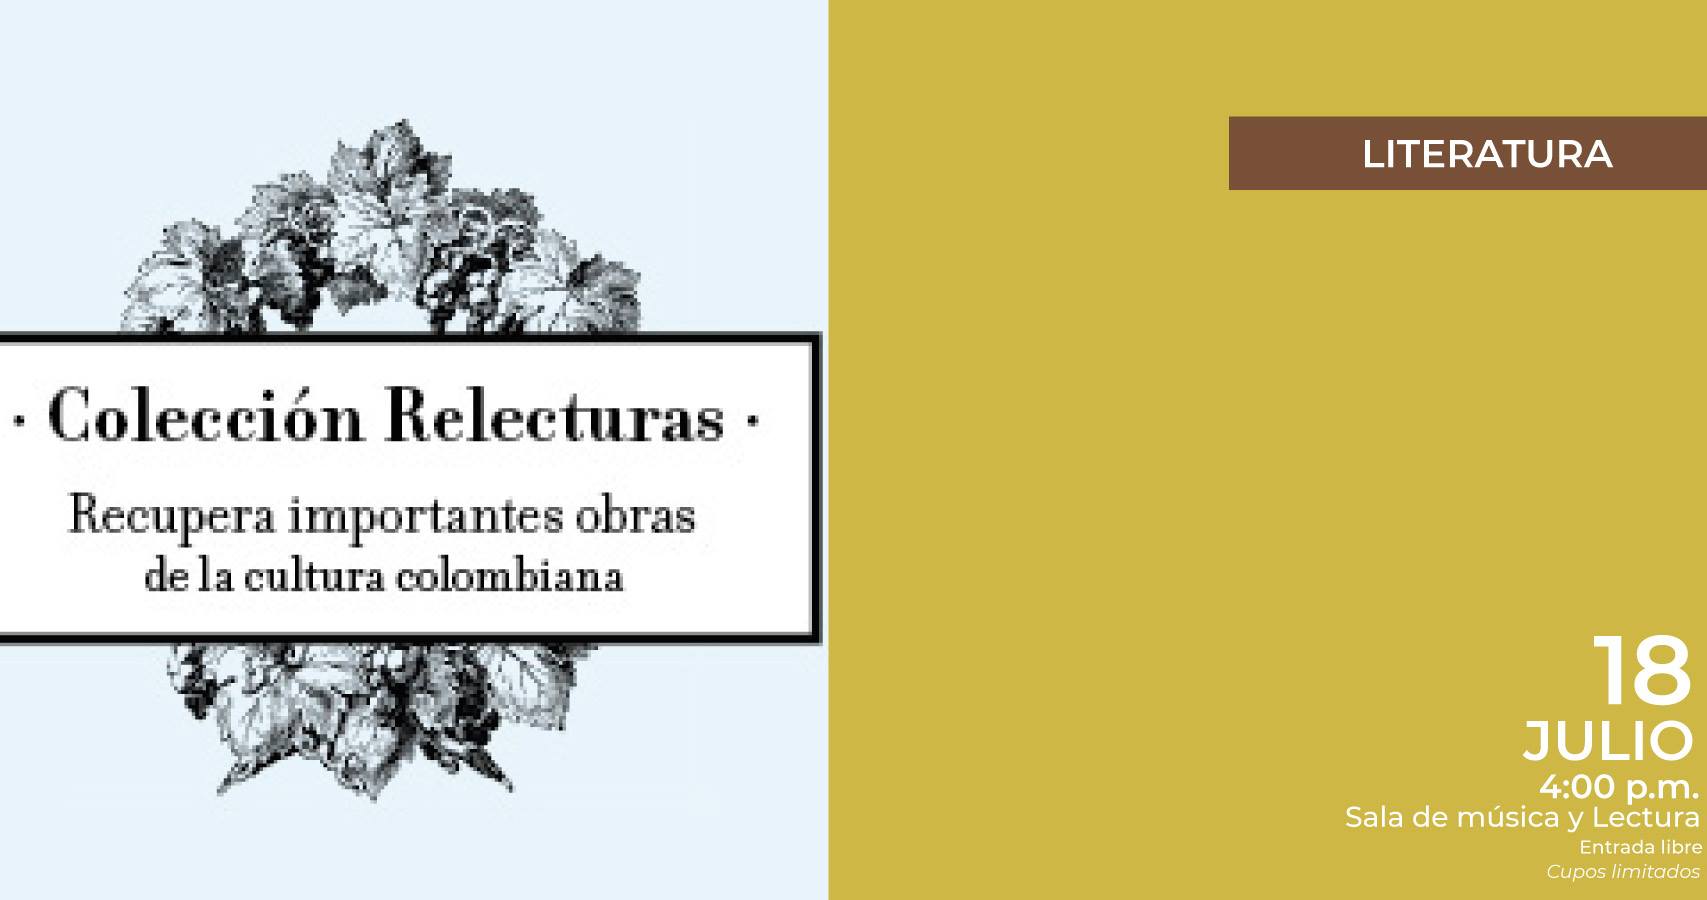 La colección Relecturas le ha dado vida a la literatura colombiana que se dejó de editar hace décadas. Por iniciativa del Departamento de Humanidades y Literatura de la Universidad de los Andes y el trabajo editorial de Panamericana Editorial, Universidad EAFIT